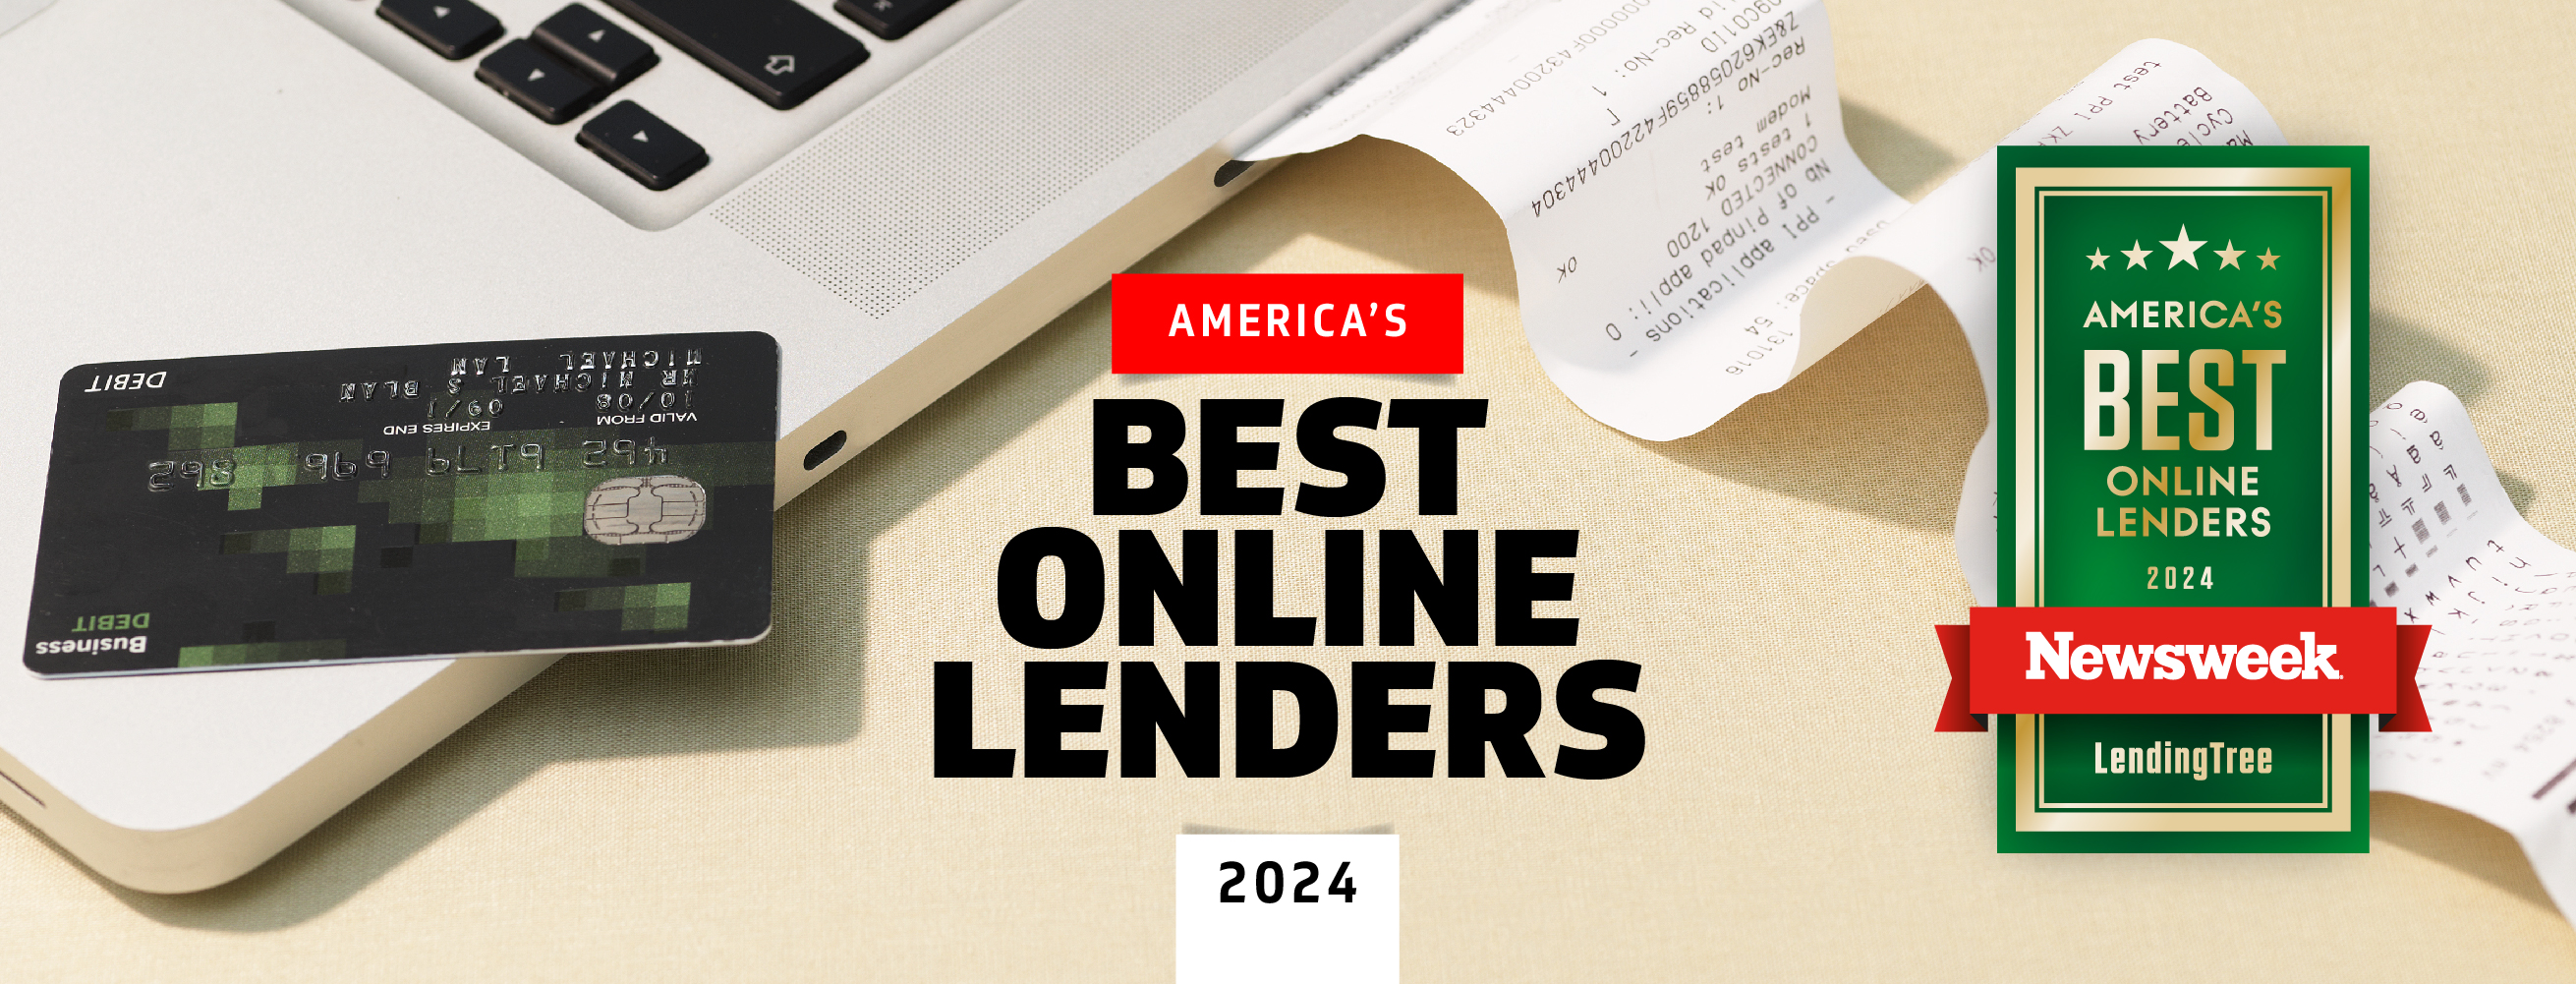 America's Best Online Lenders 2024